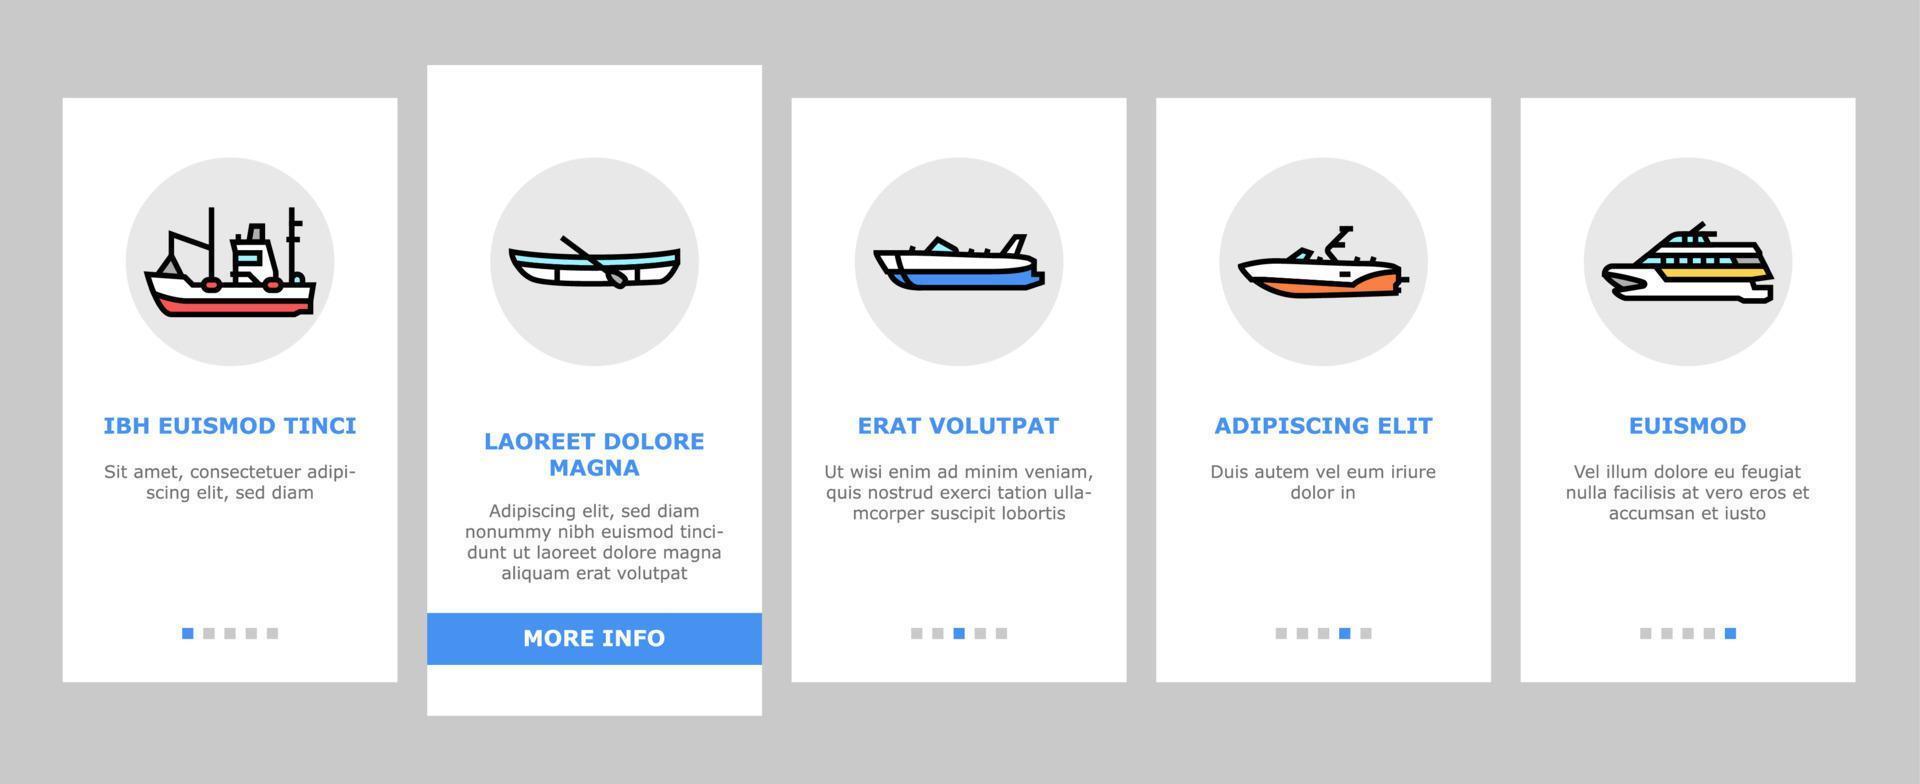 tipos de transporte de agua en barco conjunto de iconos de embarque vector